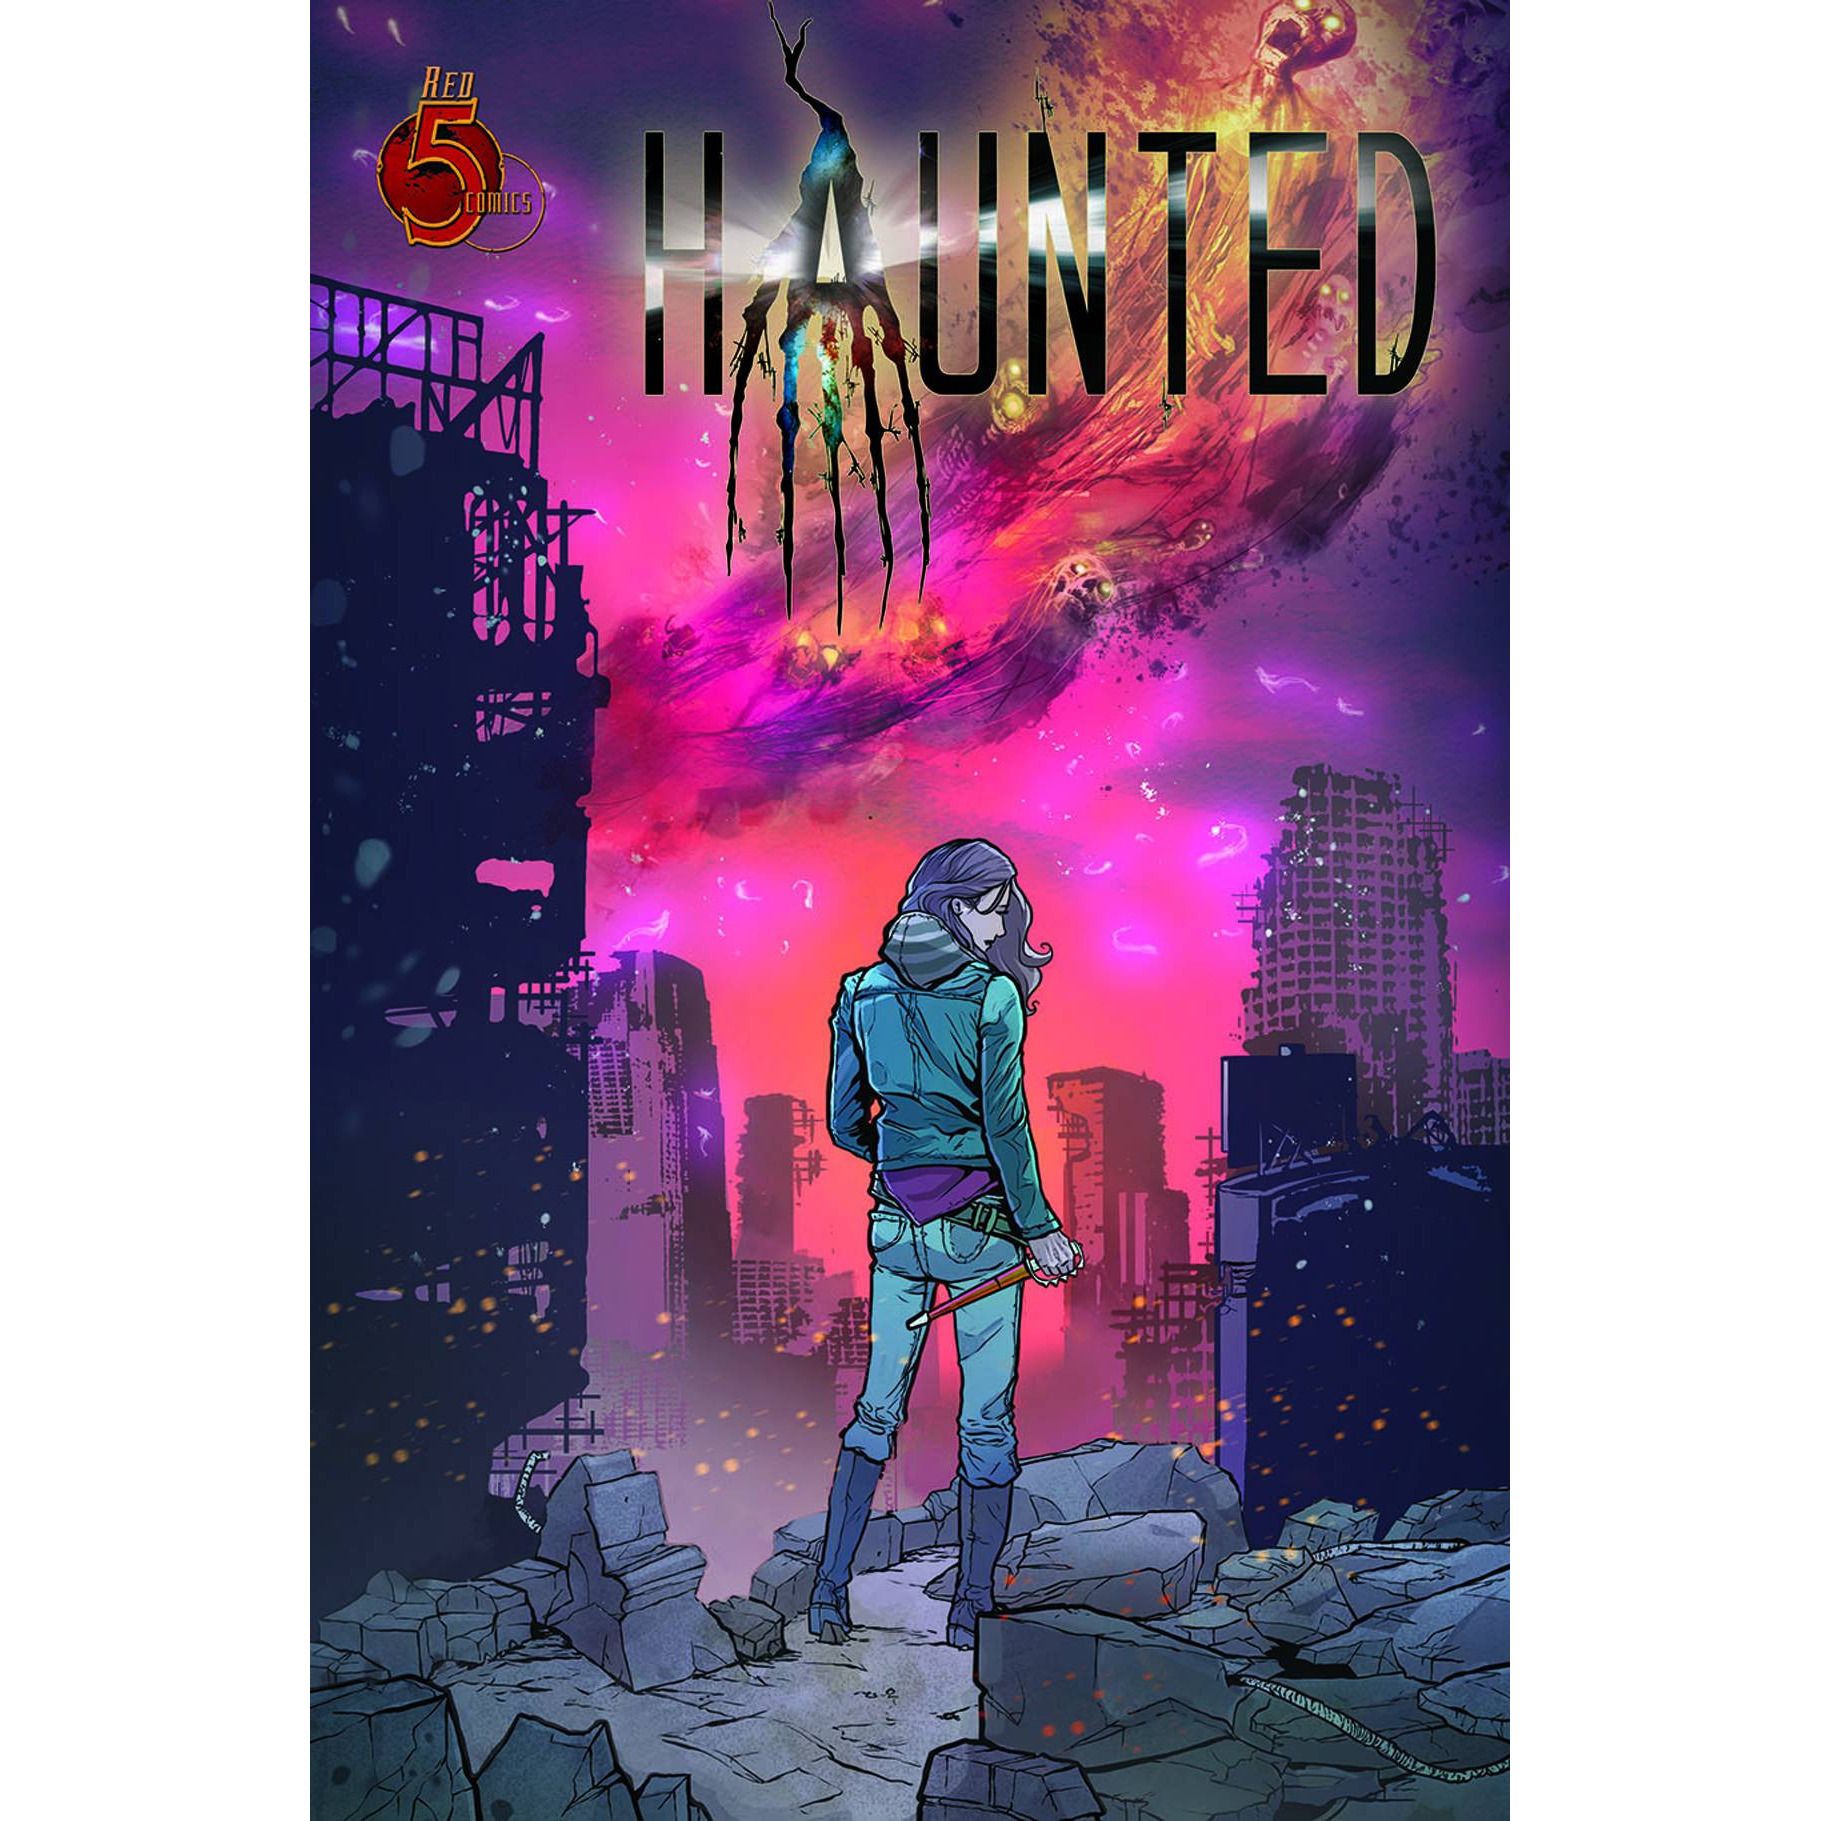  Haunted Vol. 1 TP Uncanny!